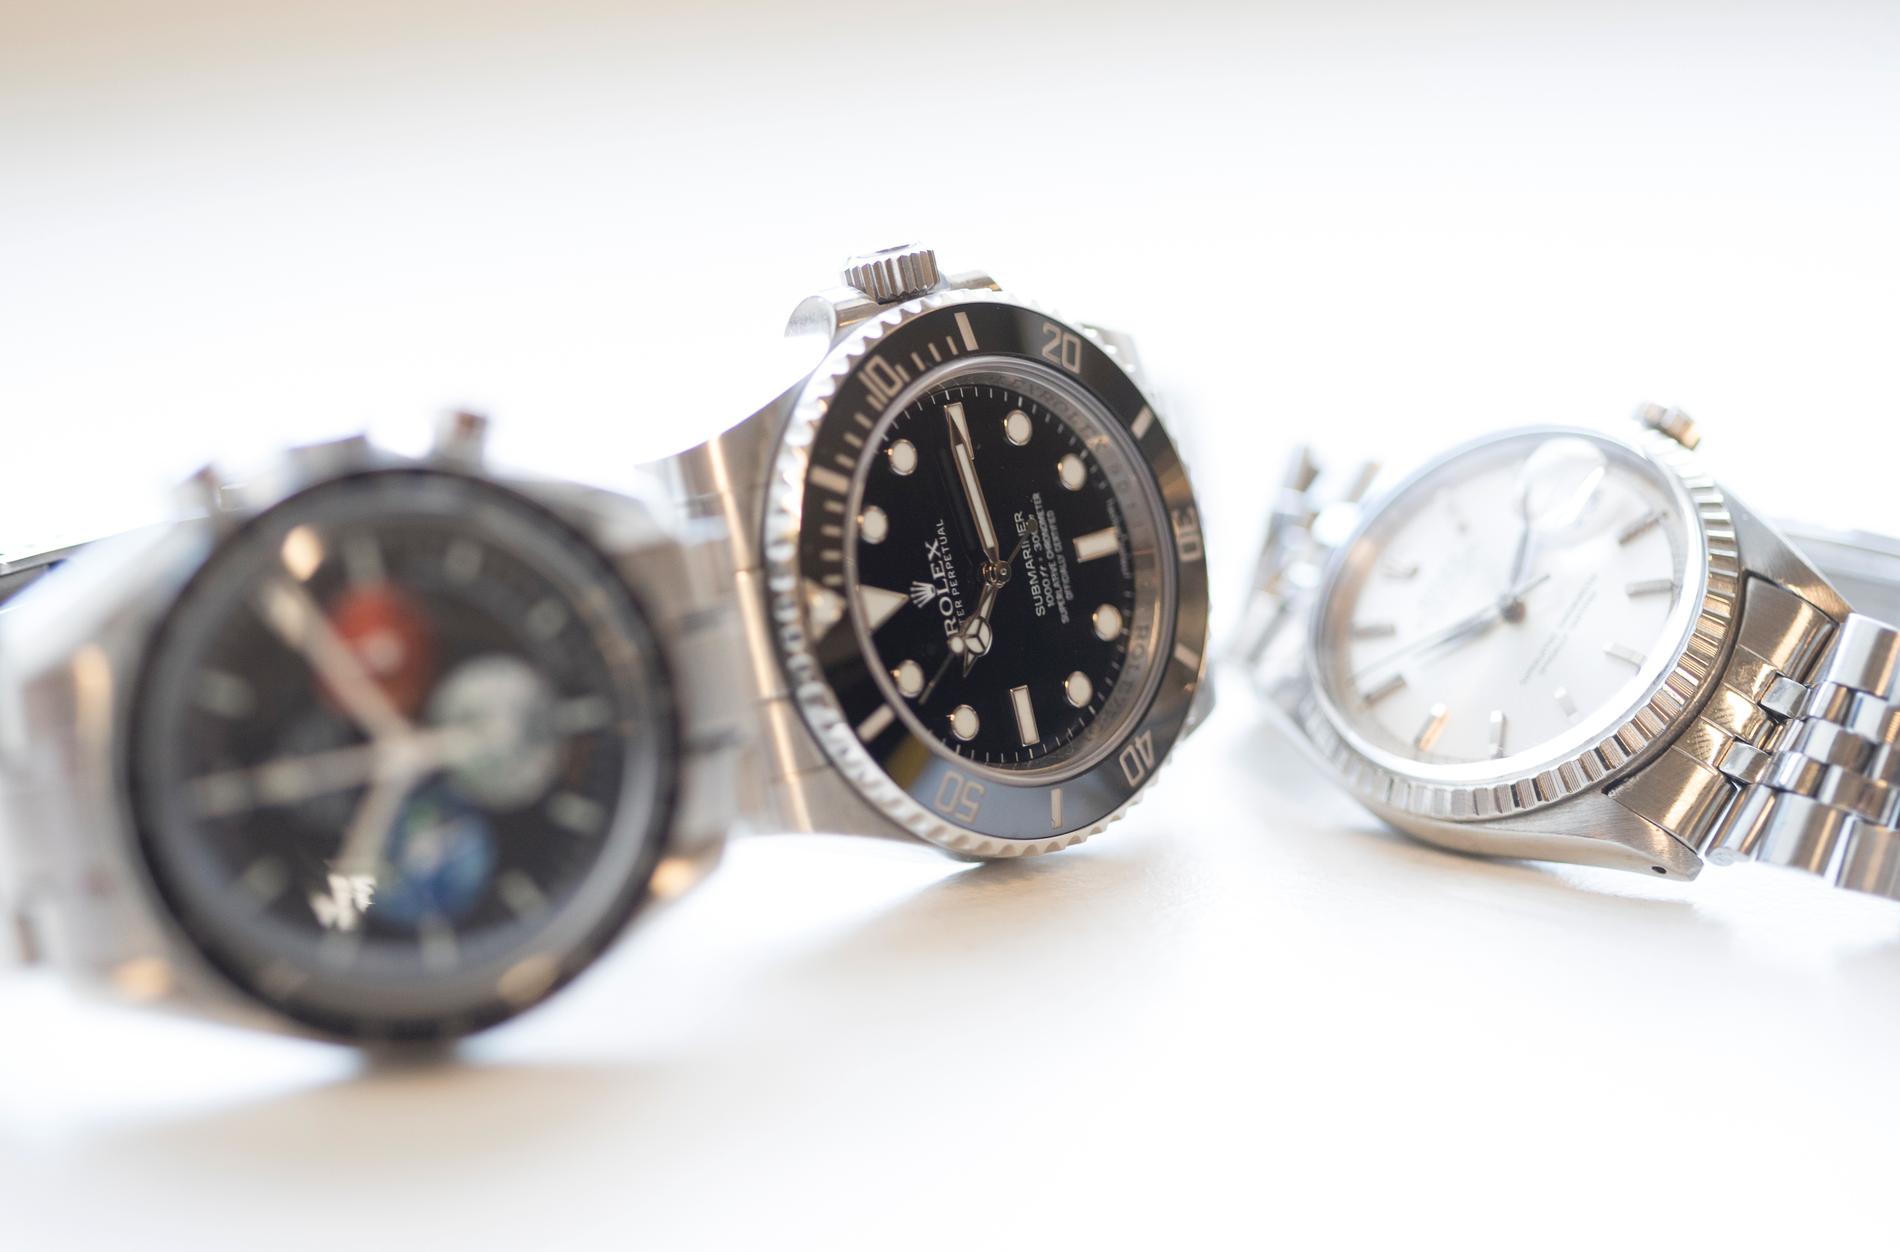 Flera av klockorna som stulits har varit av märket Rolex och varit värda uppemot 300 000 kronor. Arkivbild.